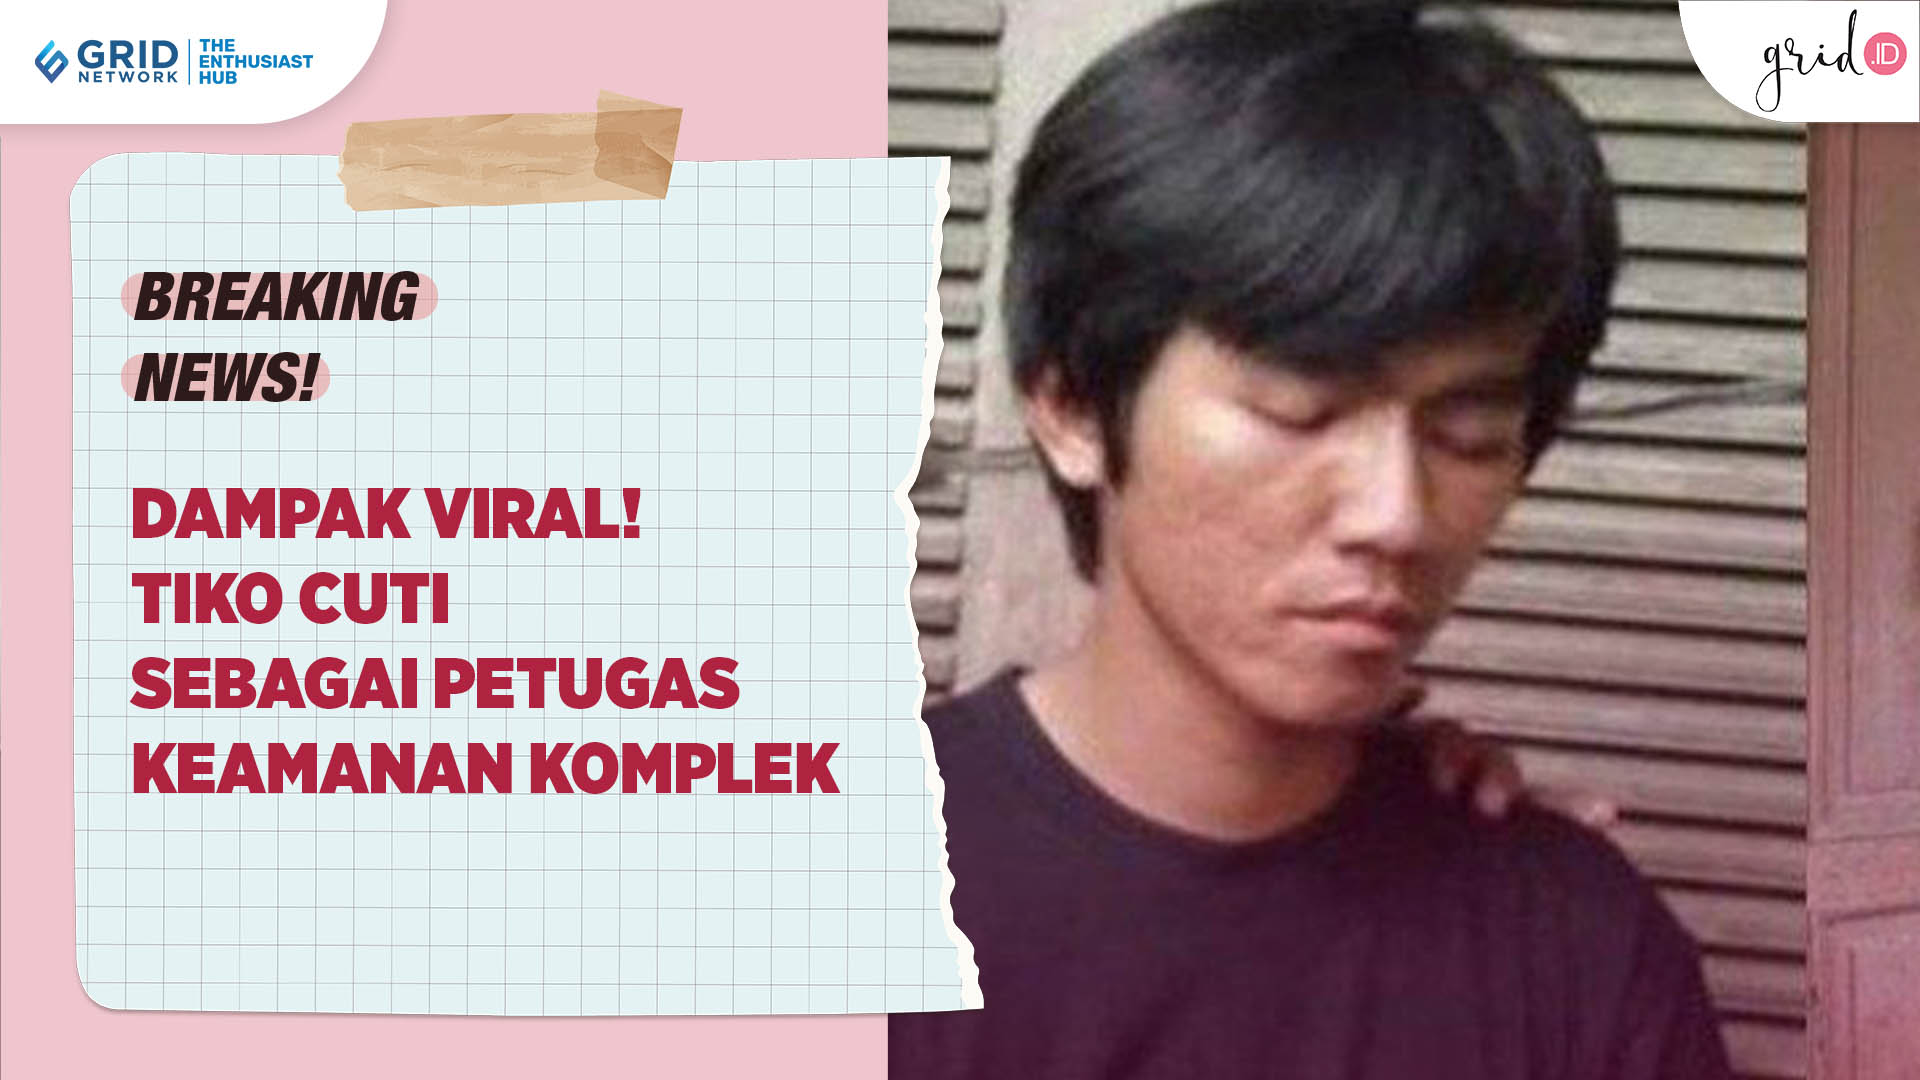 Dampak Rumah Viral! Tiko Cuti Sebagai Petugas Keamanan, Ketua RT Pastikan Tetap Beri Upah